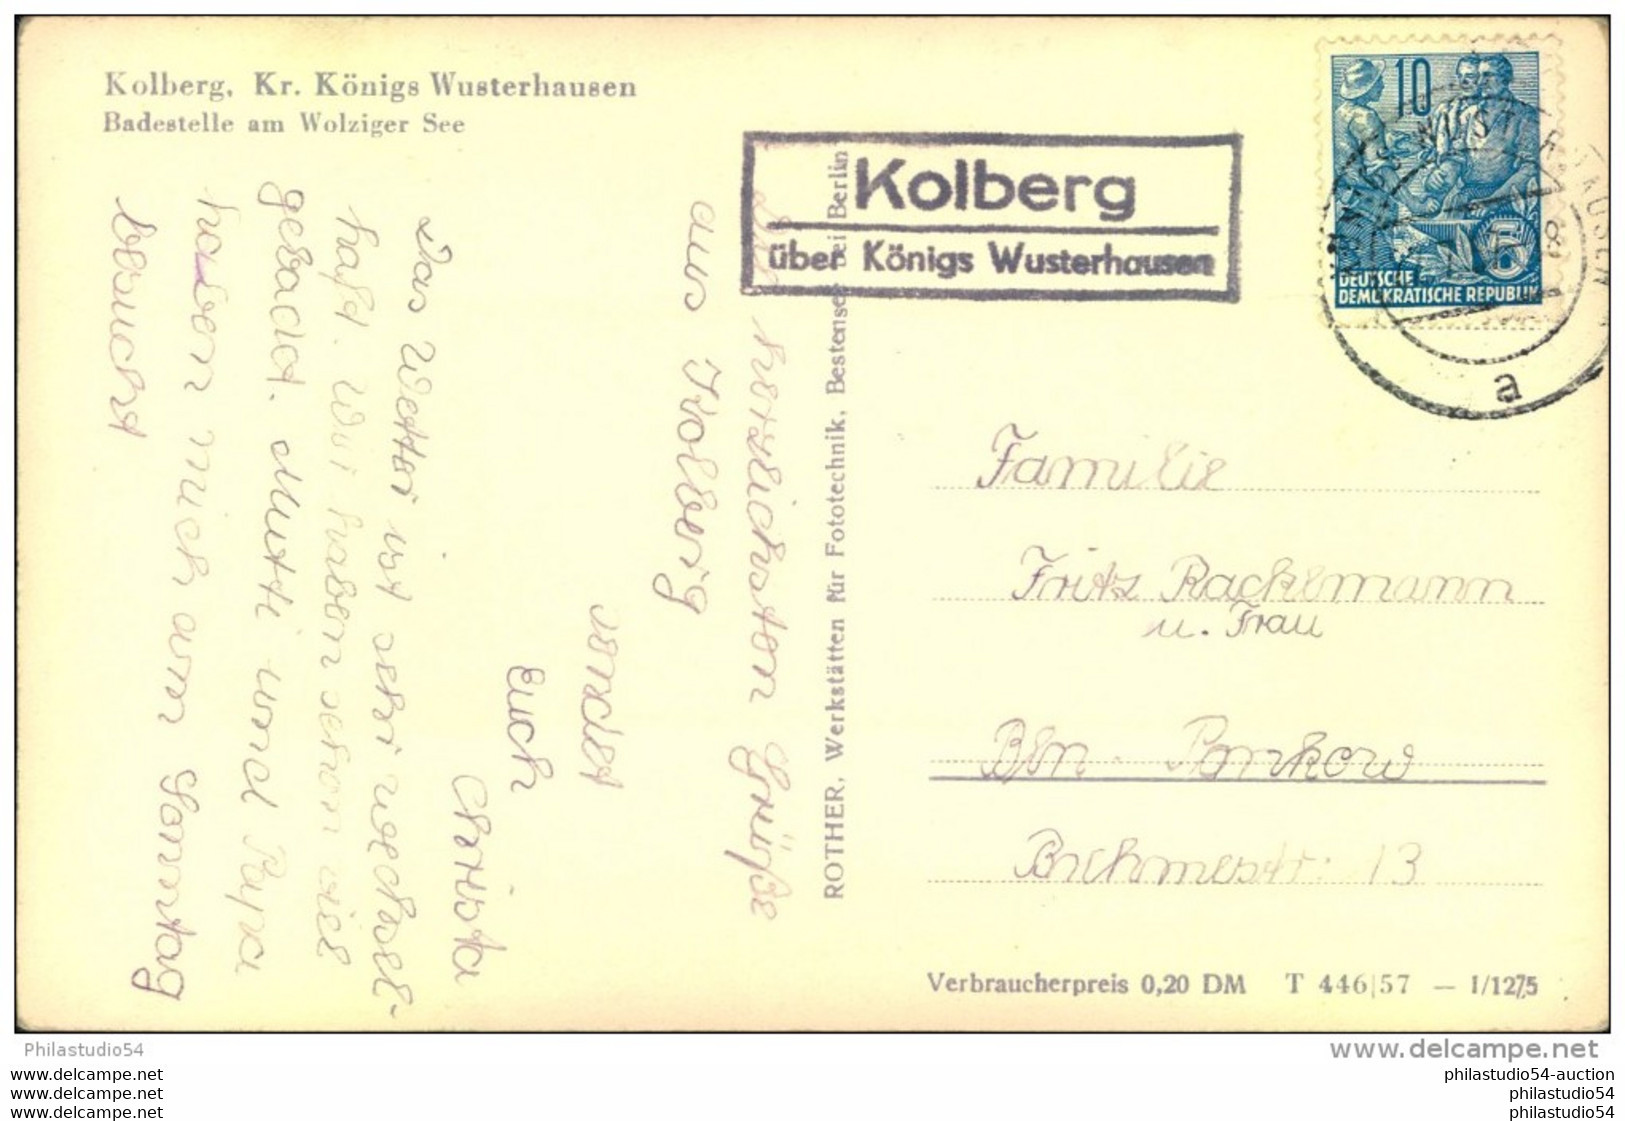 Brandenburg : 1957, Postkarte Posthilfsstelle "Kolberg über Königs Wusterhausen" - Machines à Affranchir (EMA)